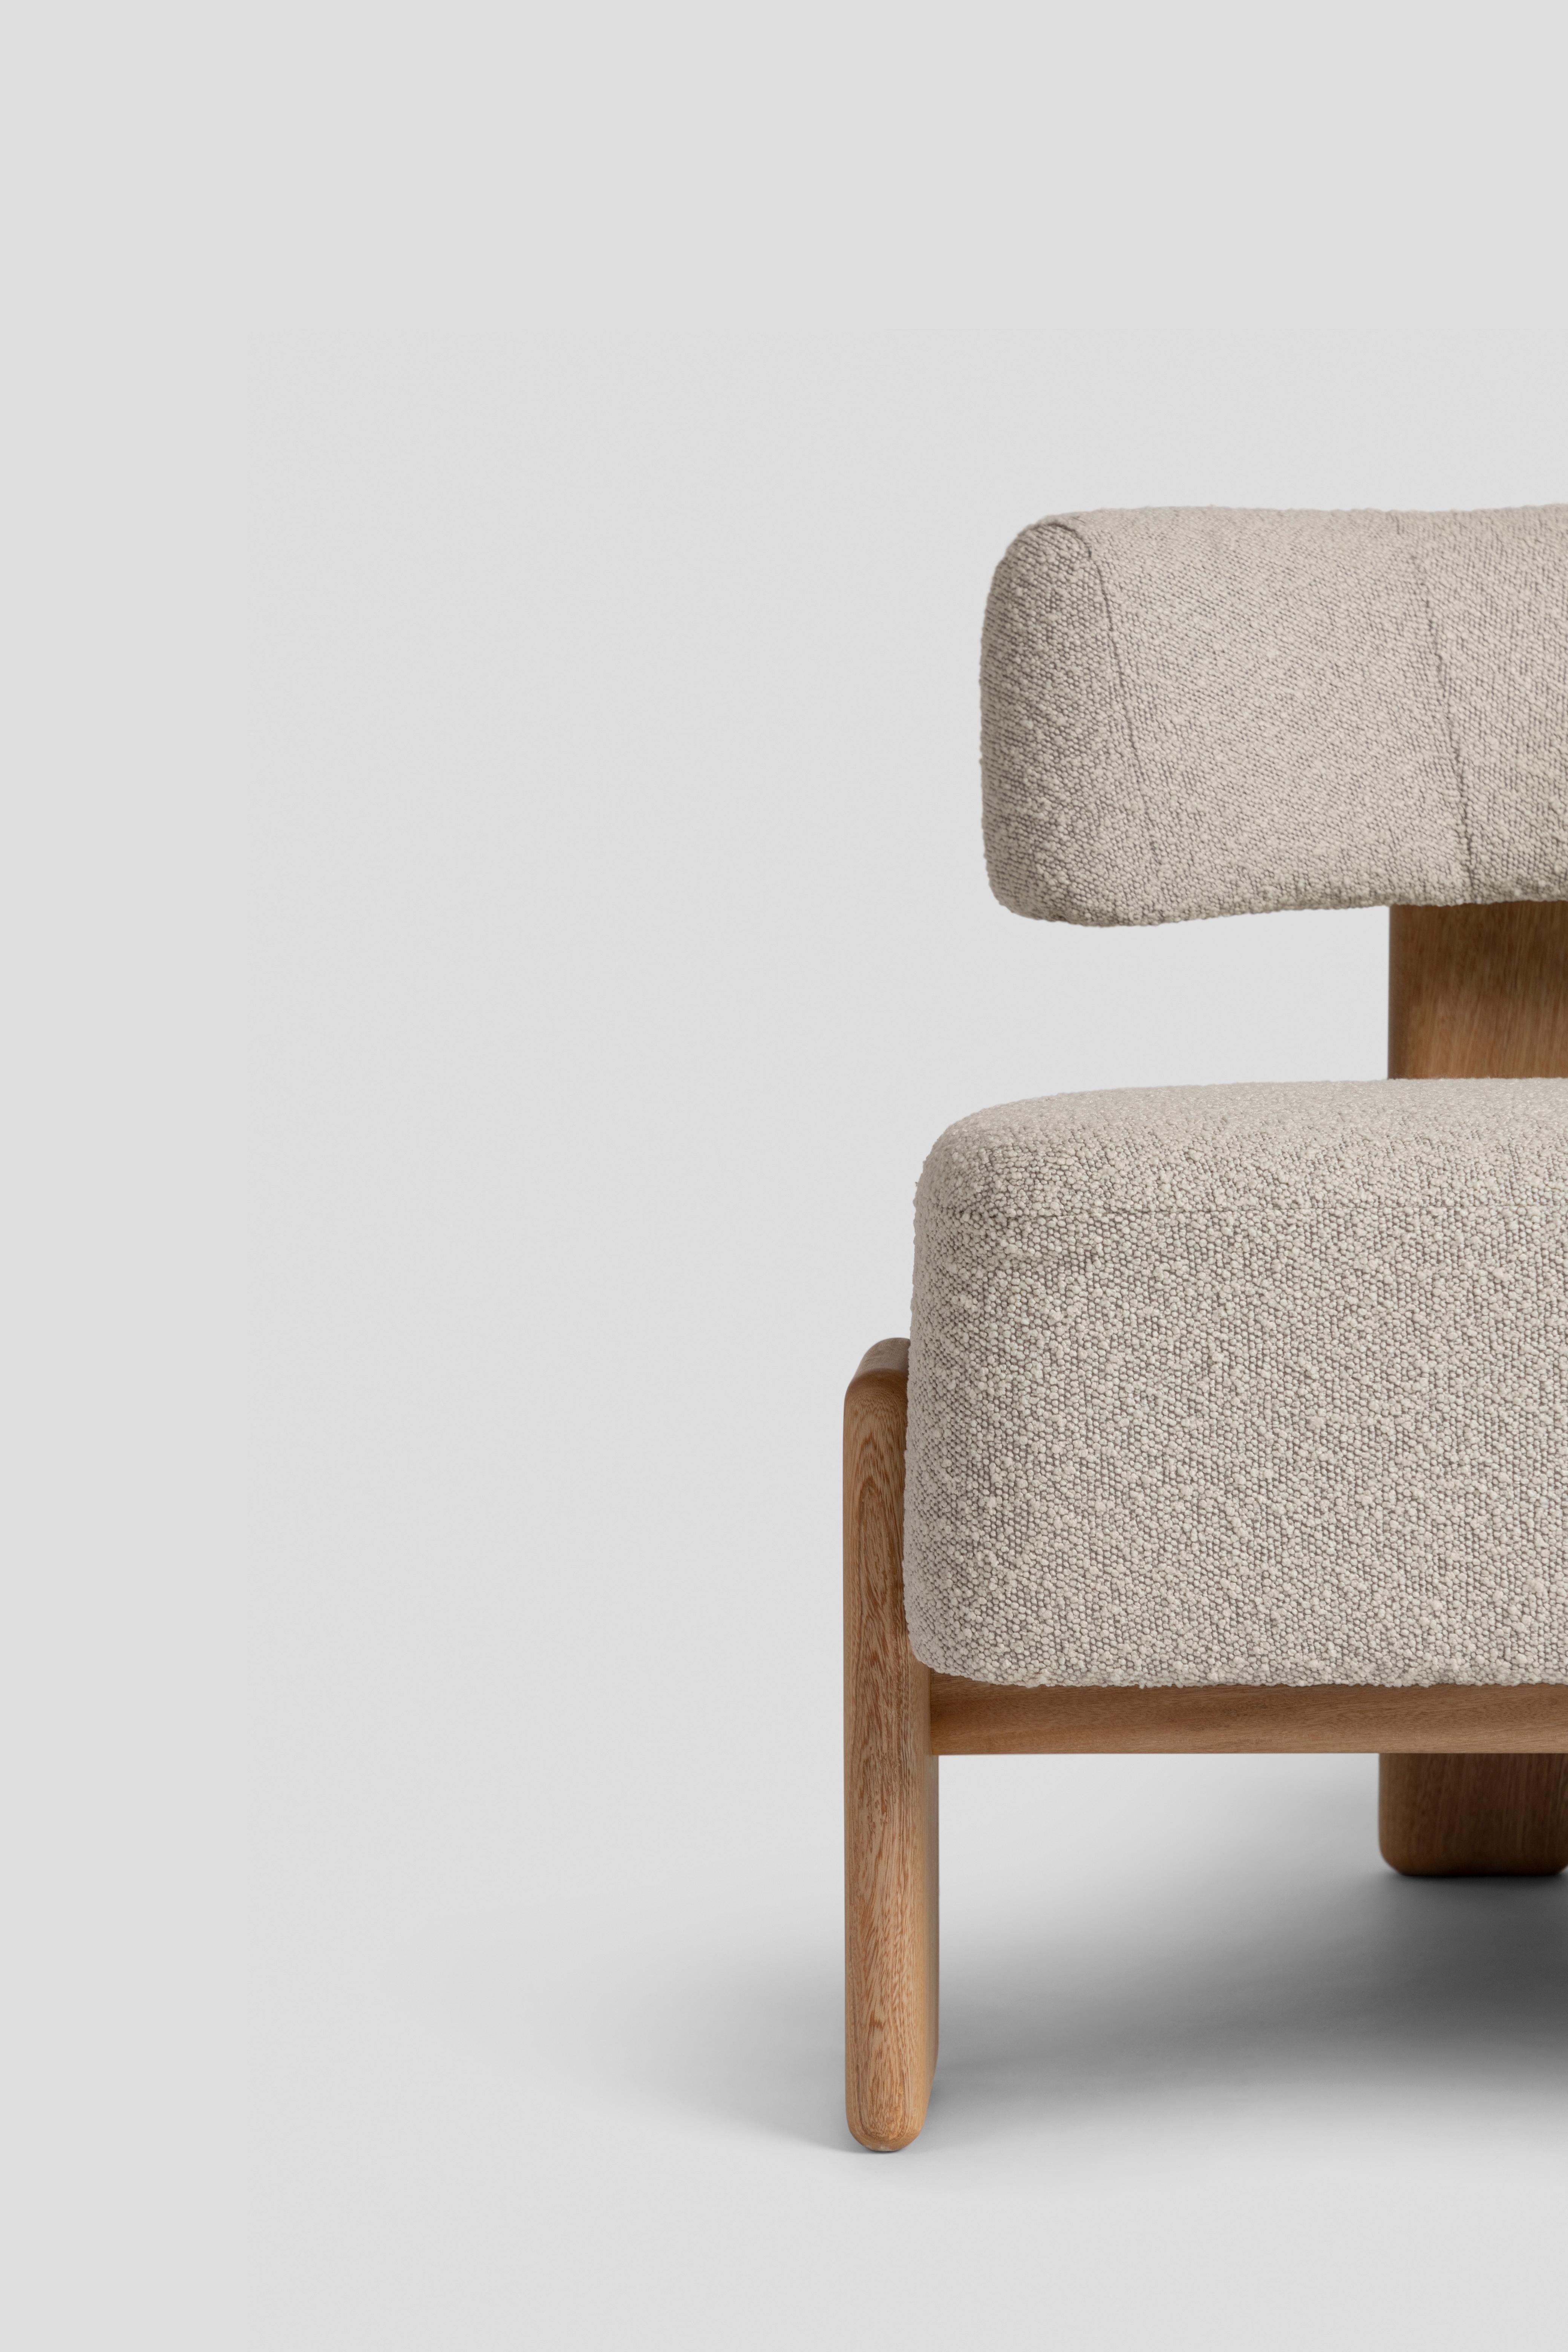 De la Paz Low Chair Solid Wood, Contemporary Mexican Design For Sale 5